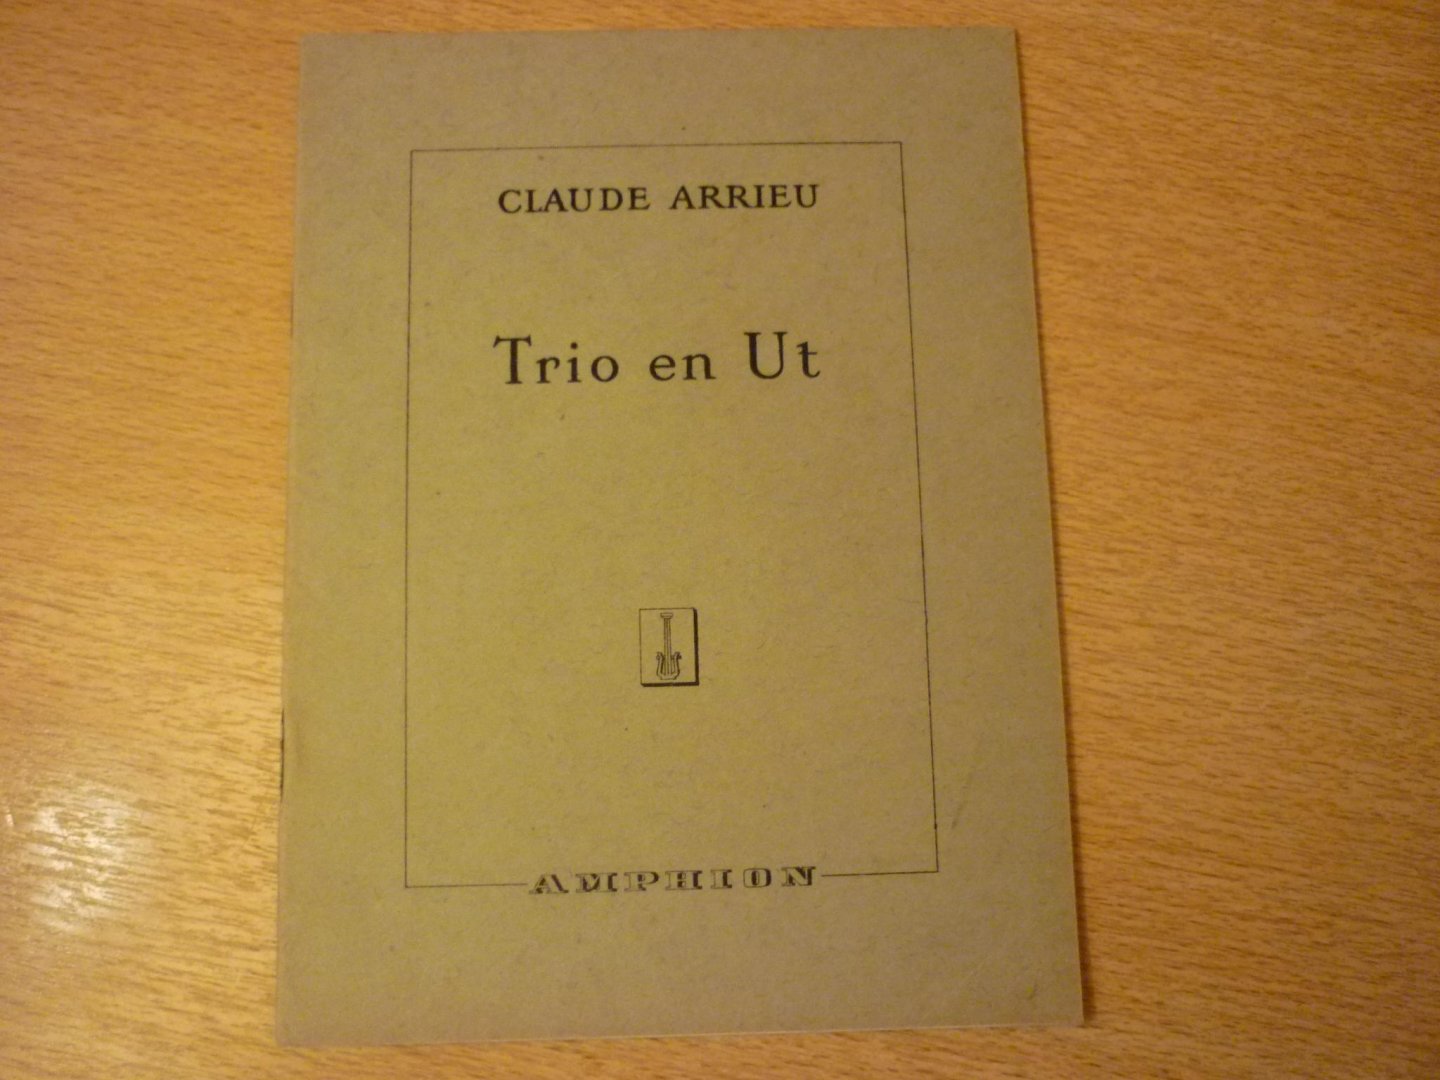 Arrieu; Claude (1903–1990) - Trio en Ut; pour Hautbois, Clarinette & Basson